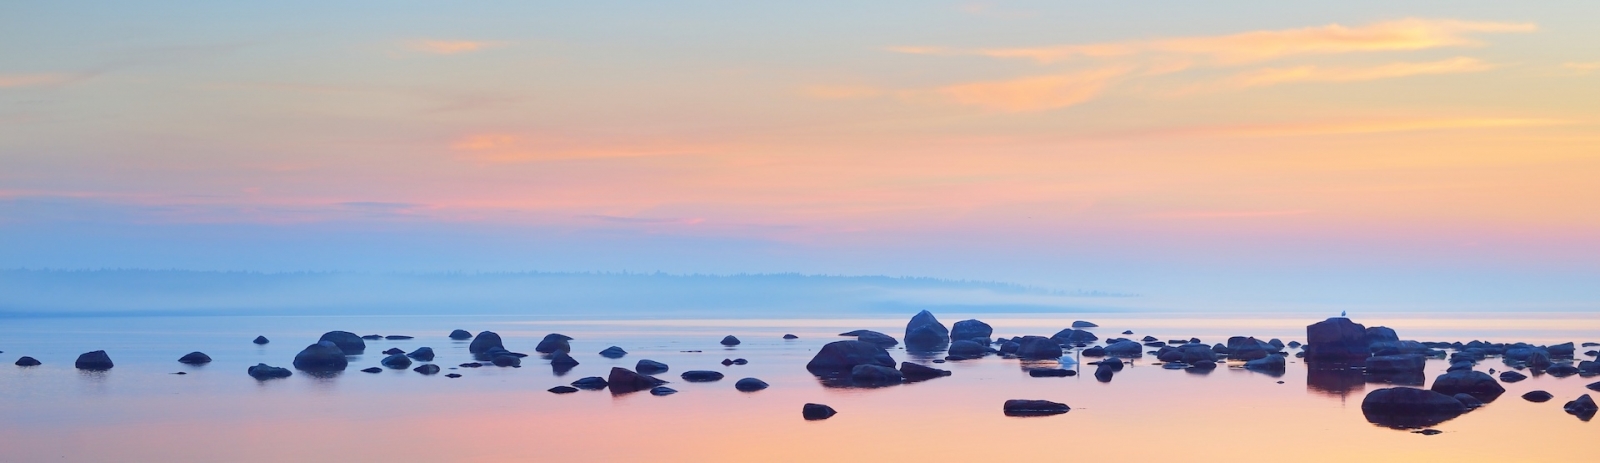 Скалы на берегу Касму (капитанский поселок) на закате.  Эстония, Балтийское море.  Чистое голубое небо, розовые облака.  Панорамный вид.  Туристические направления, отдых, экологический туризм